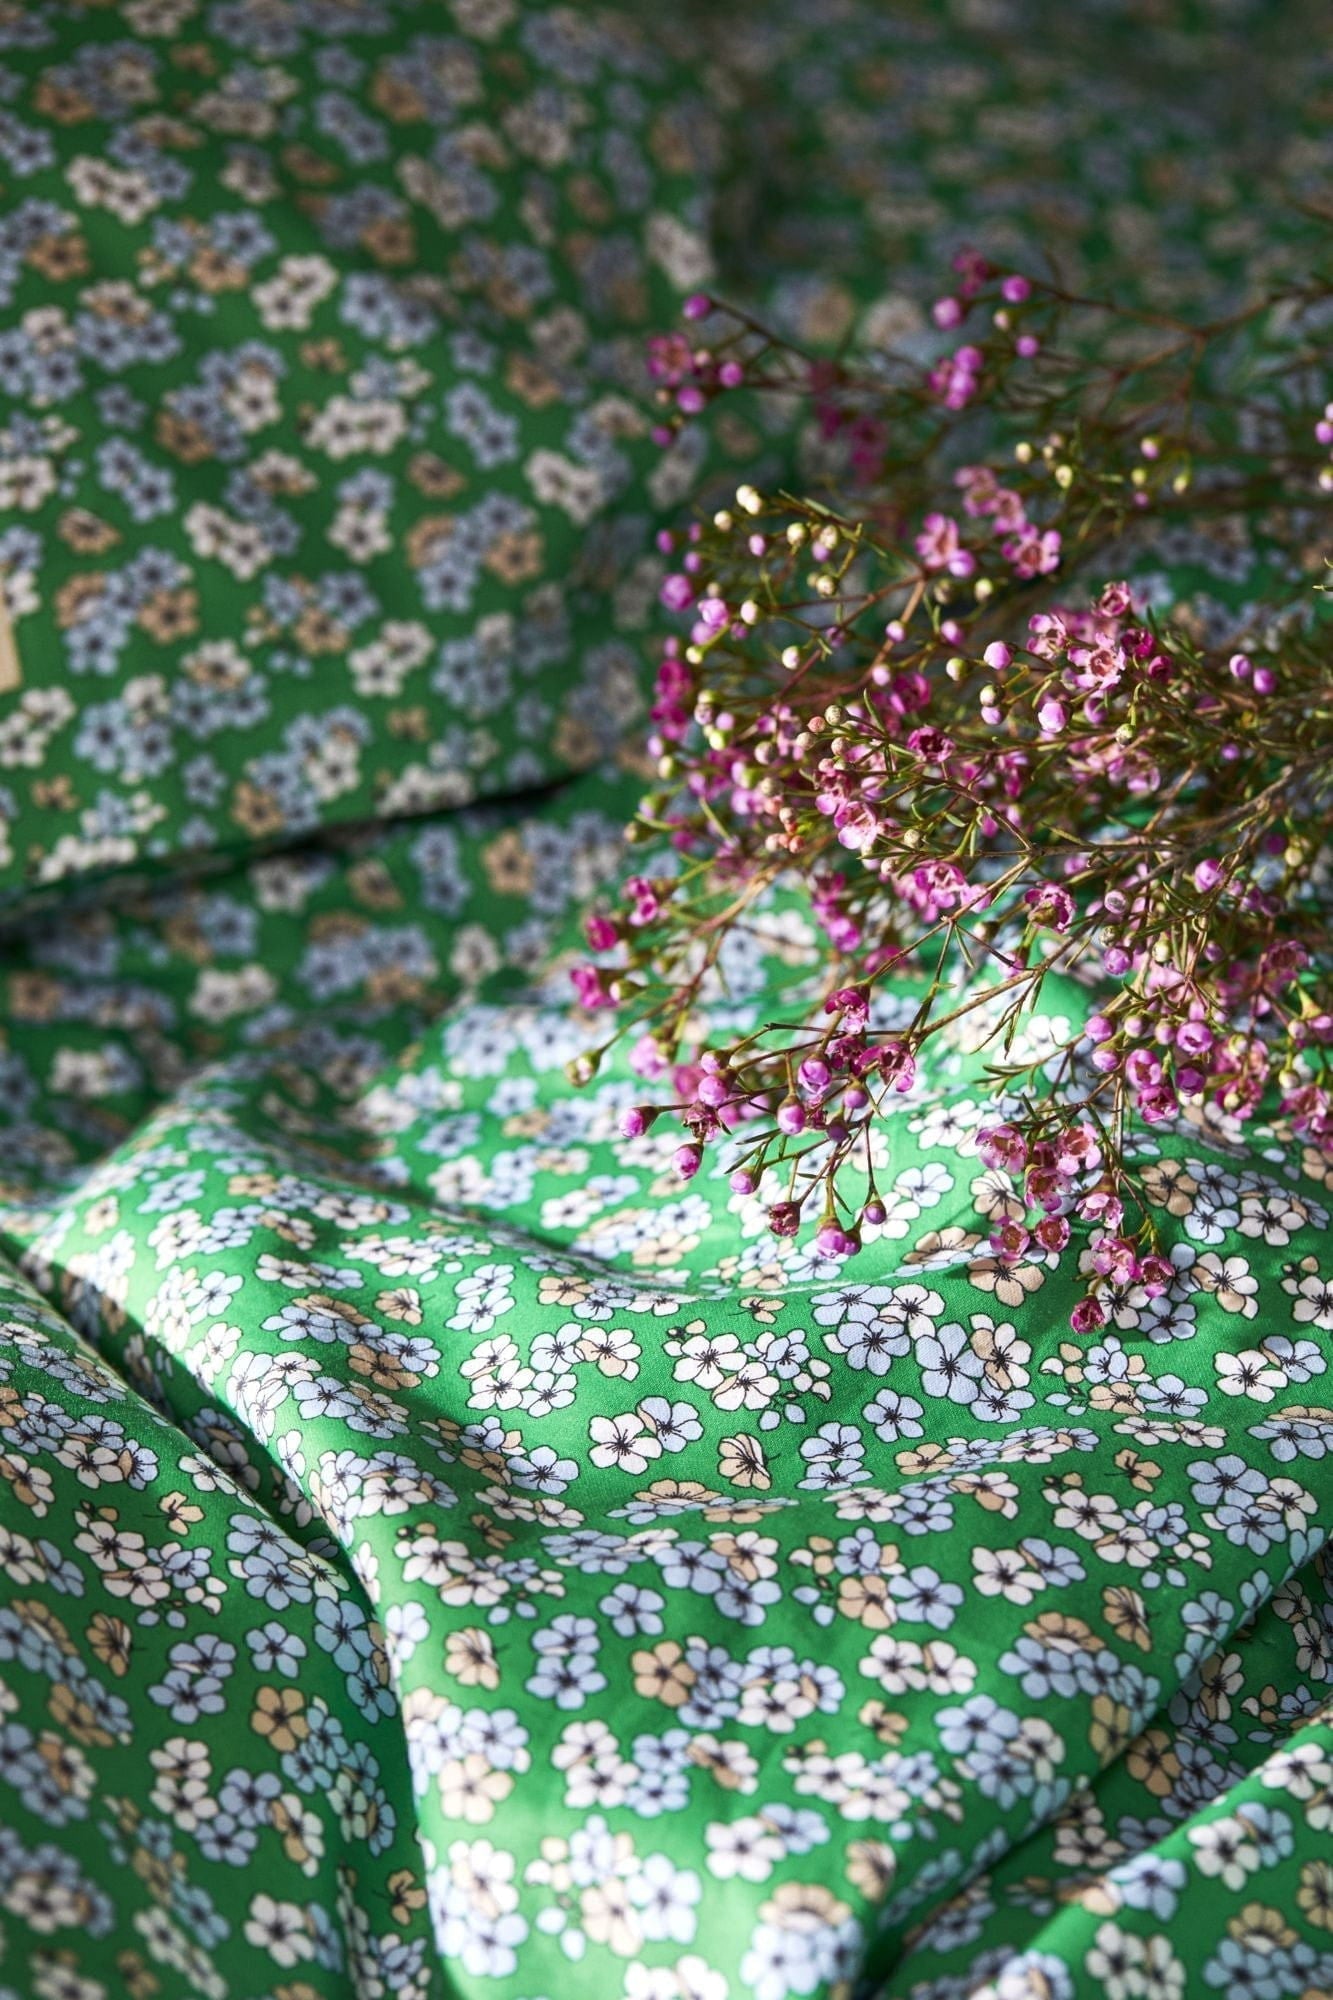 Juna Aangenaam bed linnen 200x220 cm, groen